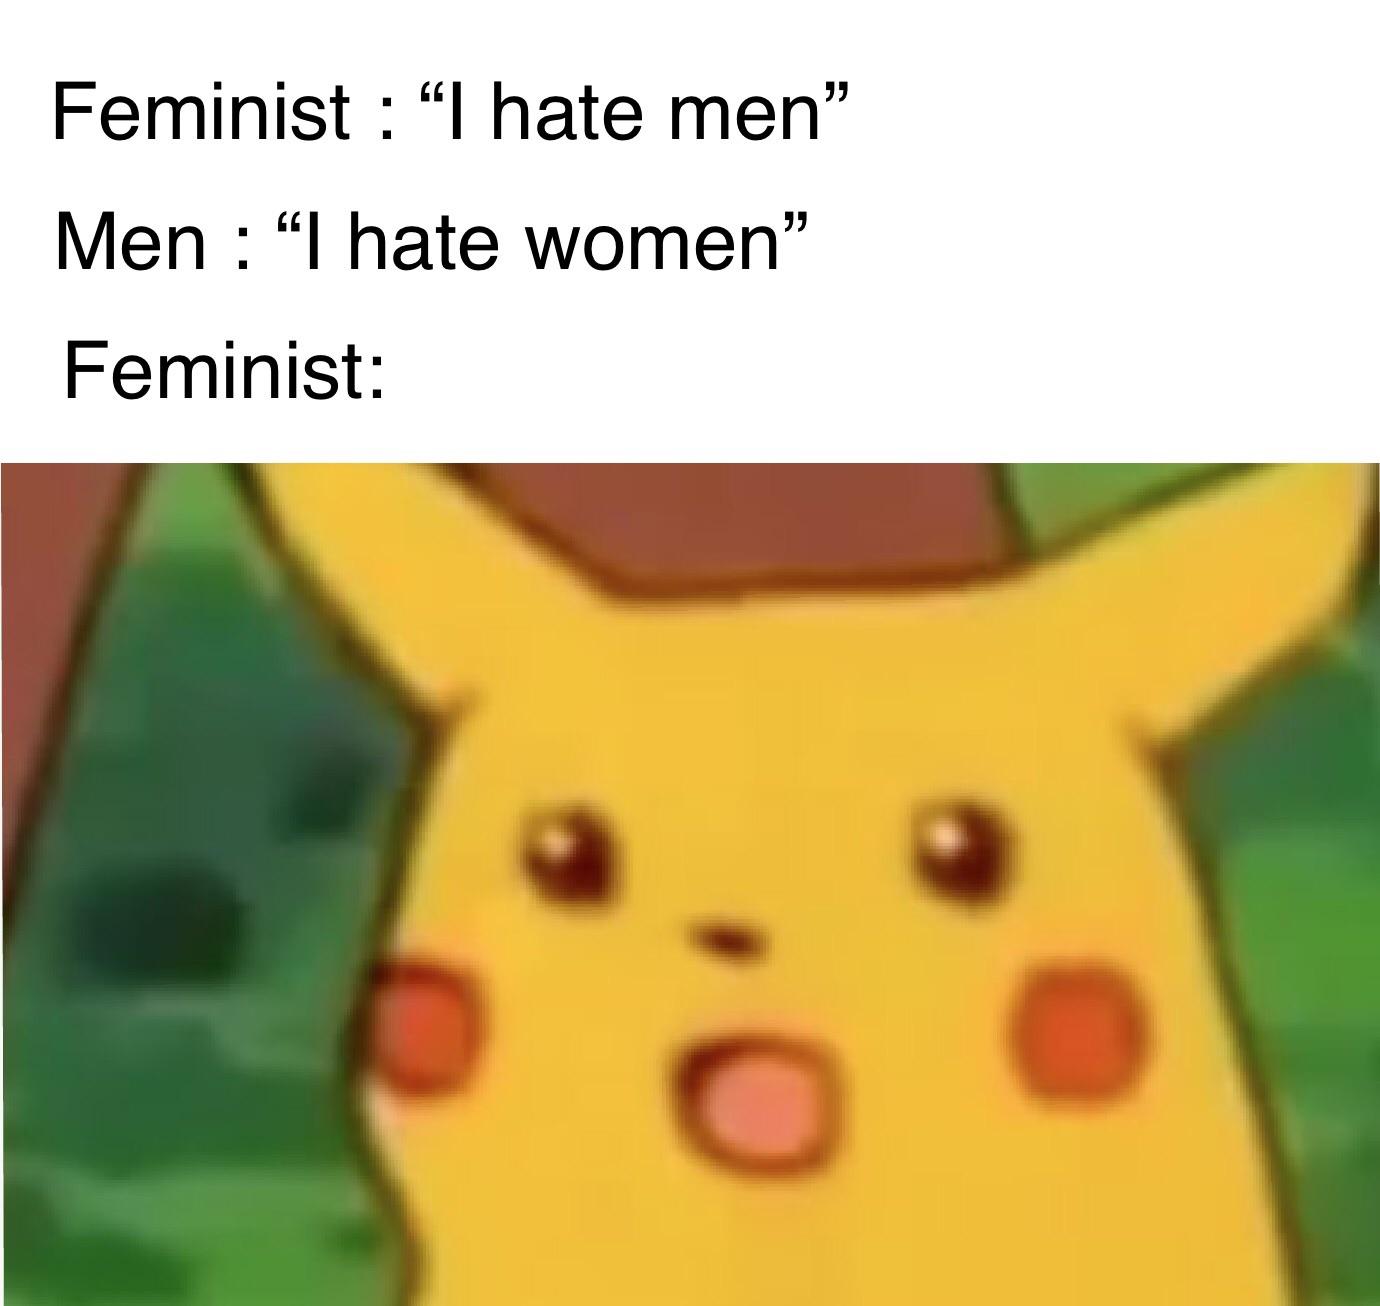 feminist pikachu meme - Feminist hate men Men "I hate women" Feminist